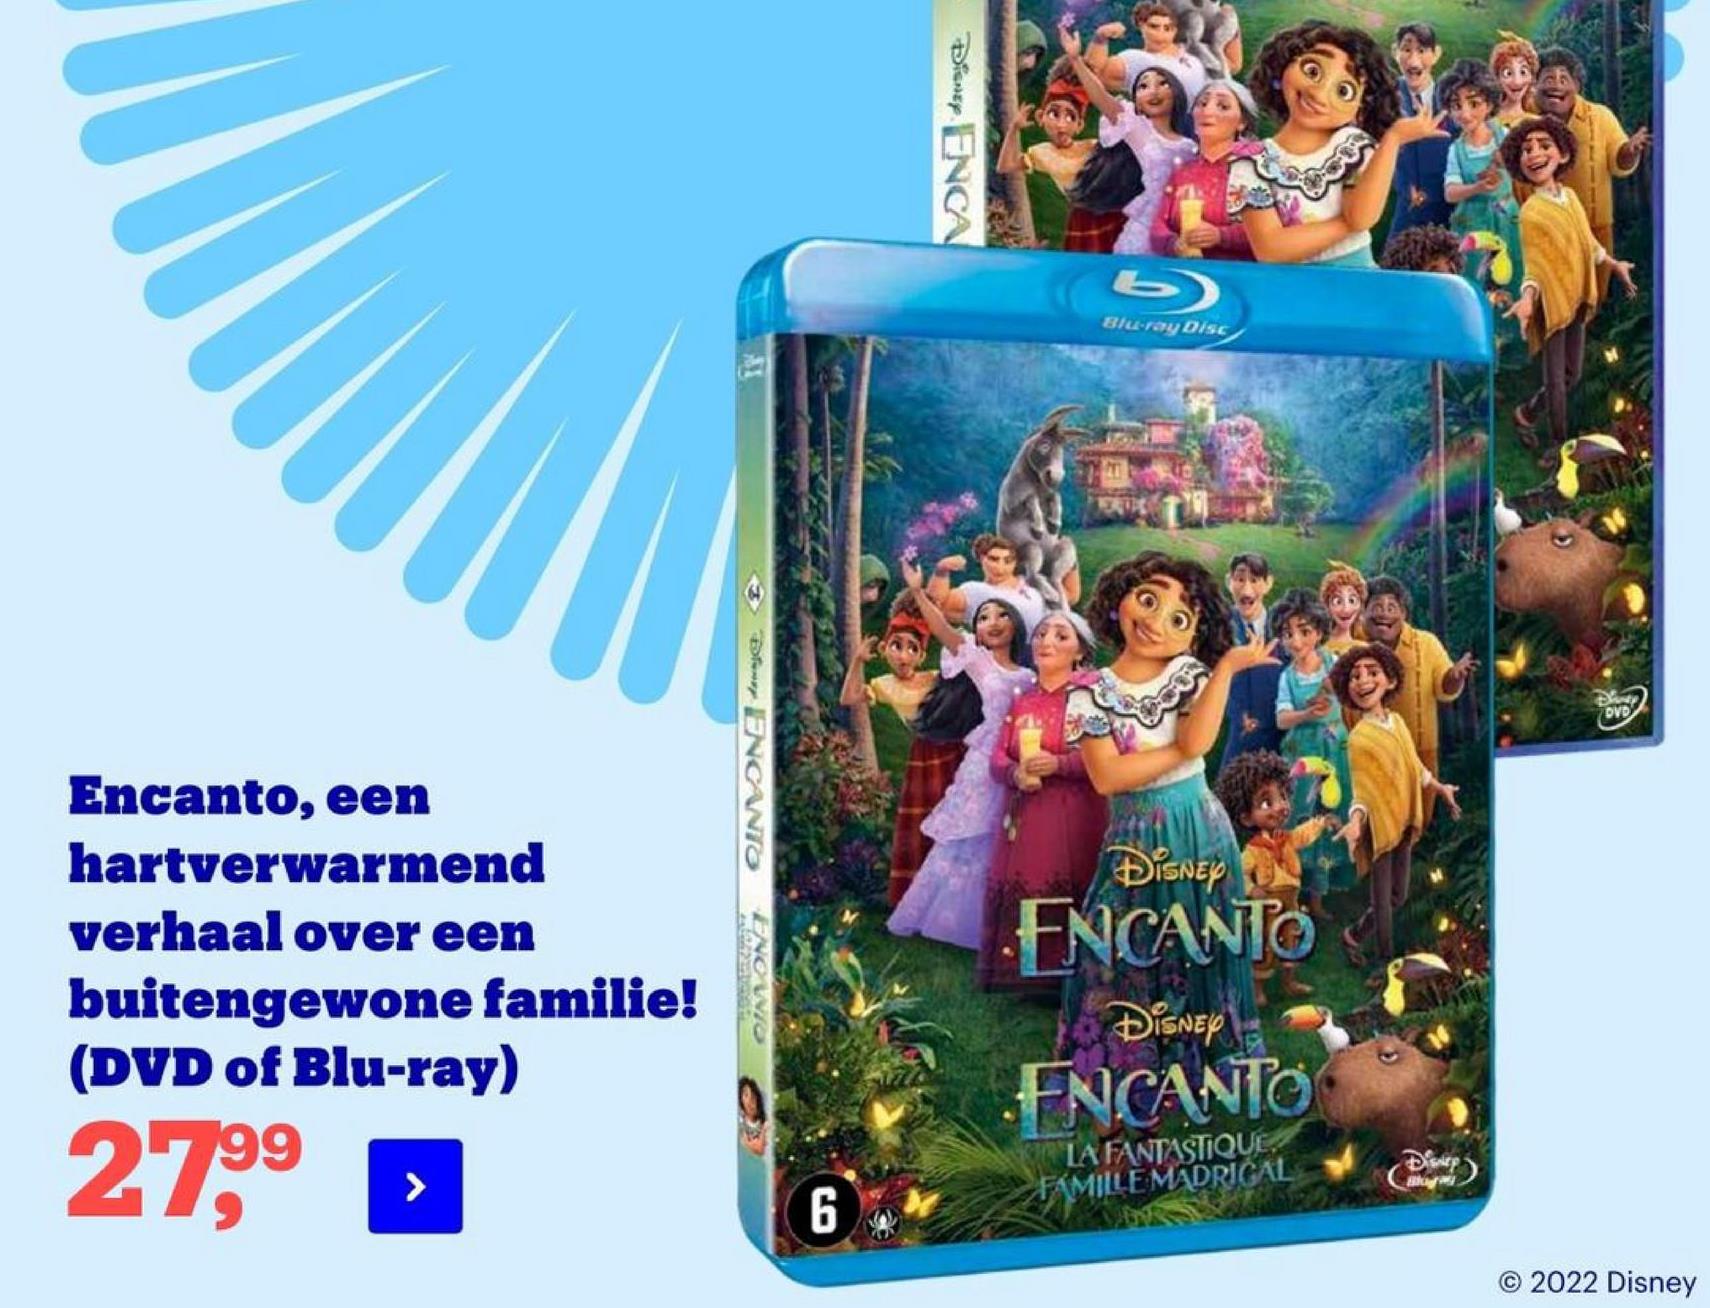 Disney ENCA
Blu-ray Disc
Desde
DVD
Đw ENCANIO
DISNEY
Encanto, een
hartverwarmend
verhaal over een
buitengewone familie!
(DVD of Blu-ray)
ENCANTO
OMRON
Disney
FNCANTO
2799
LA FANTASTIQUE.
FAMILLE MADRIČAL
6
© 2022 Disney
